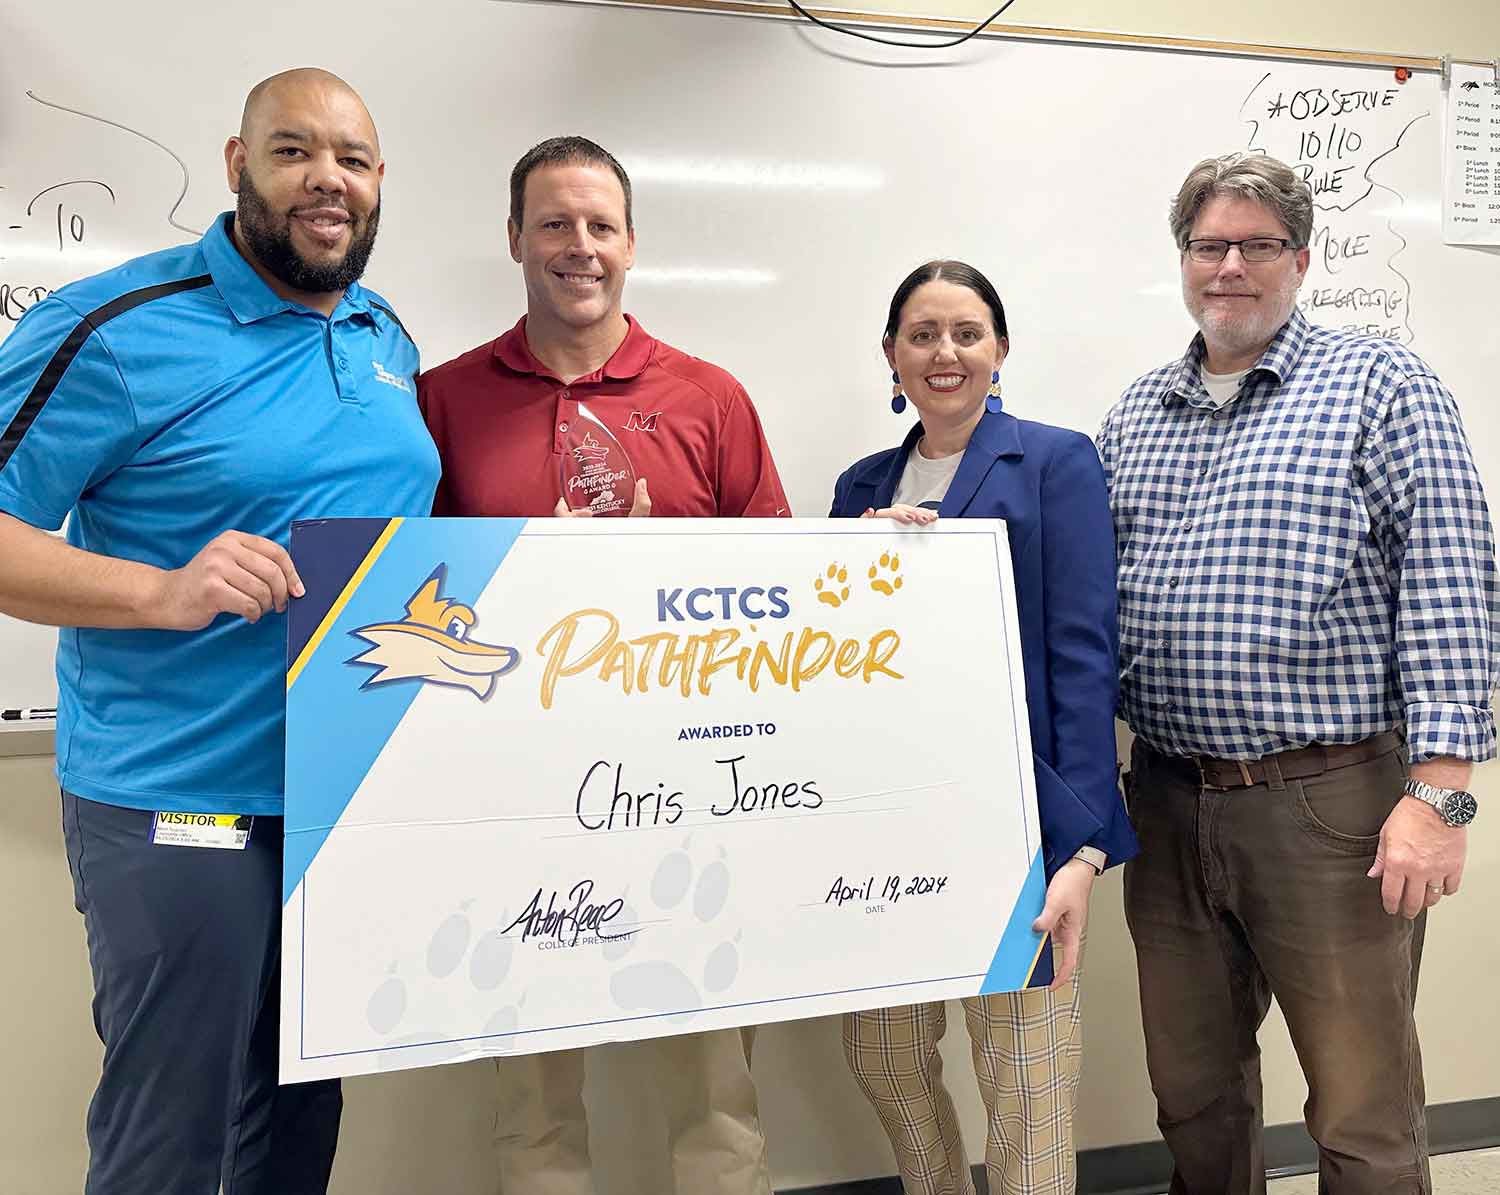 KCTCS High School Counselor/Teacher Pathfinder Award